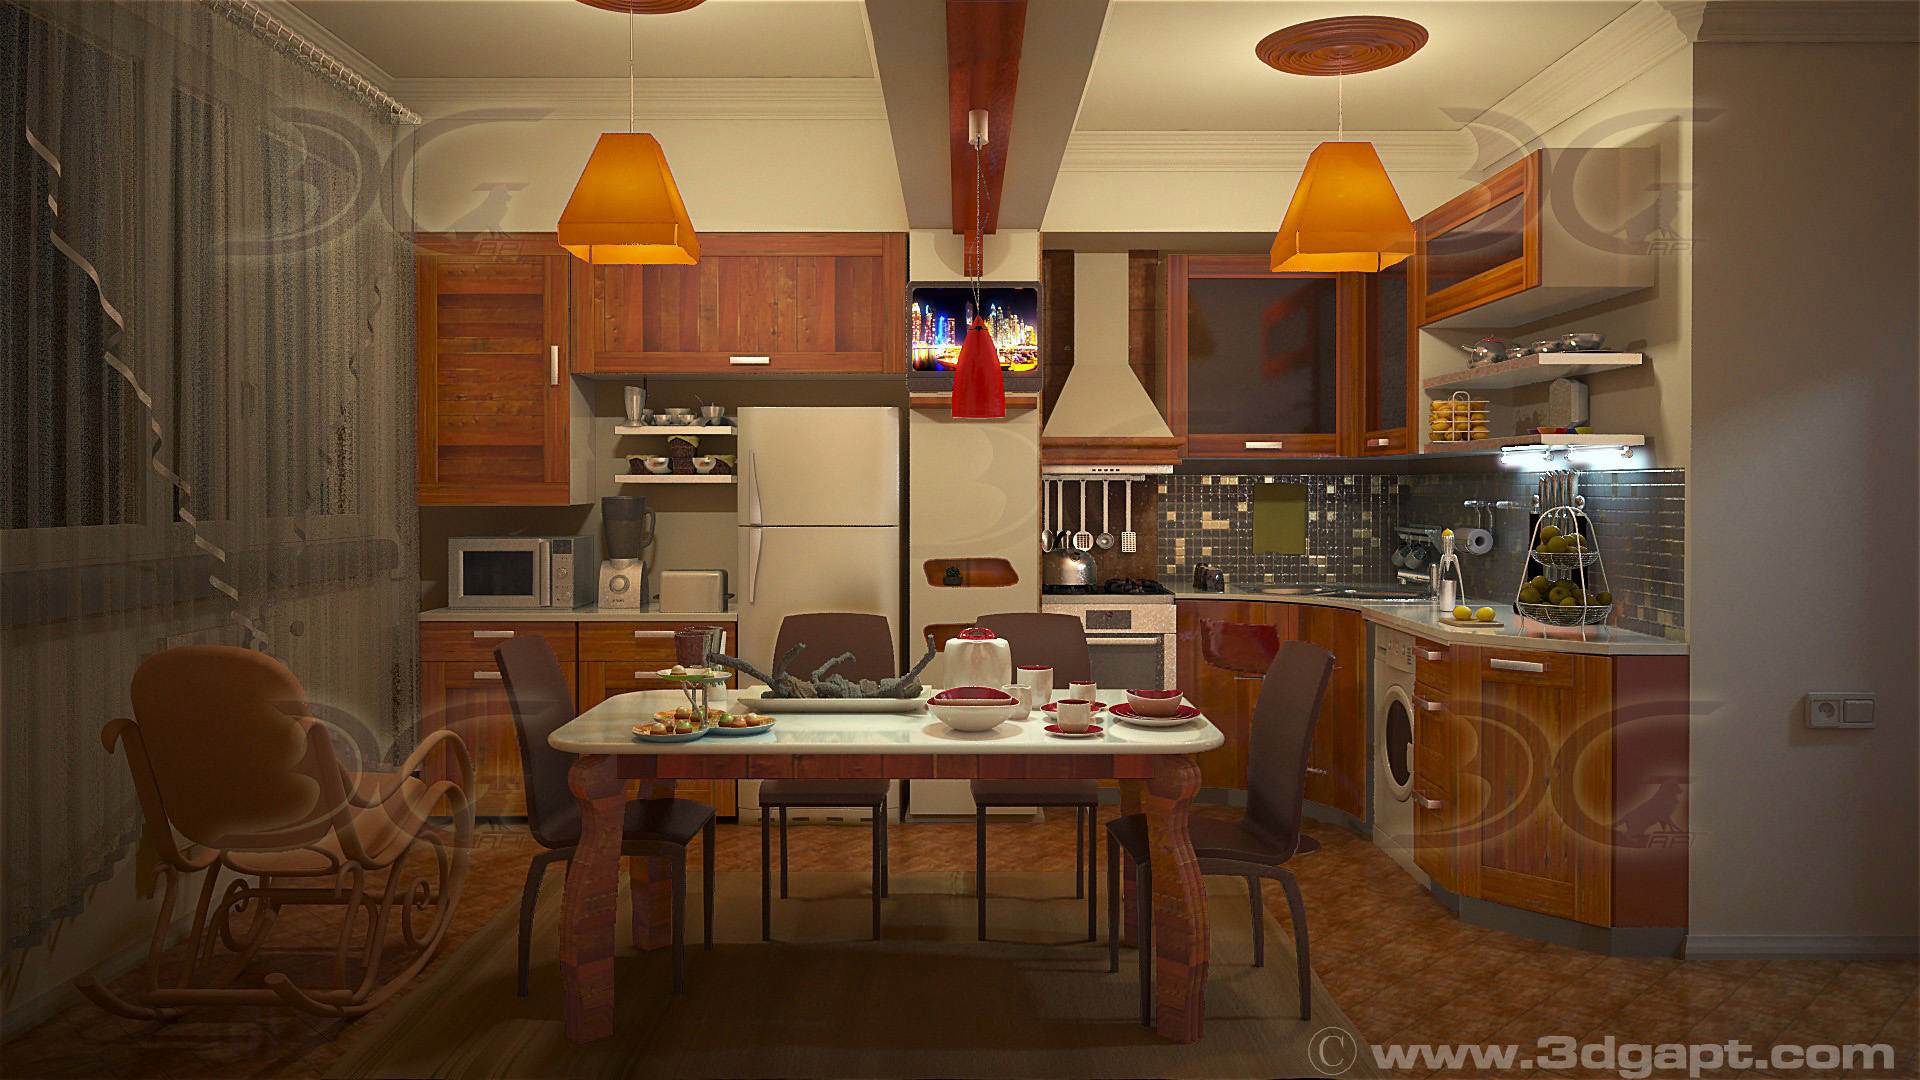 Architecture Interior Kitchen 3versions 25